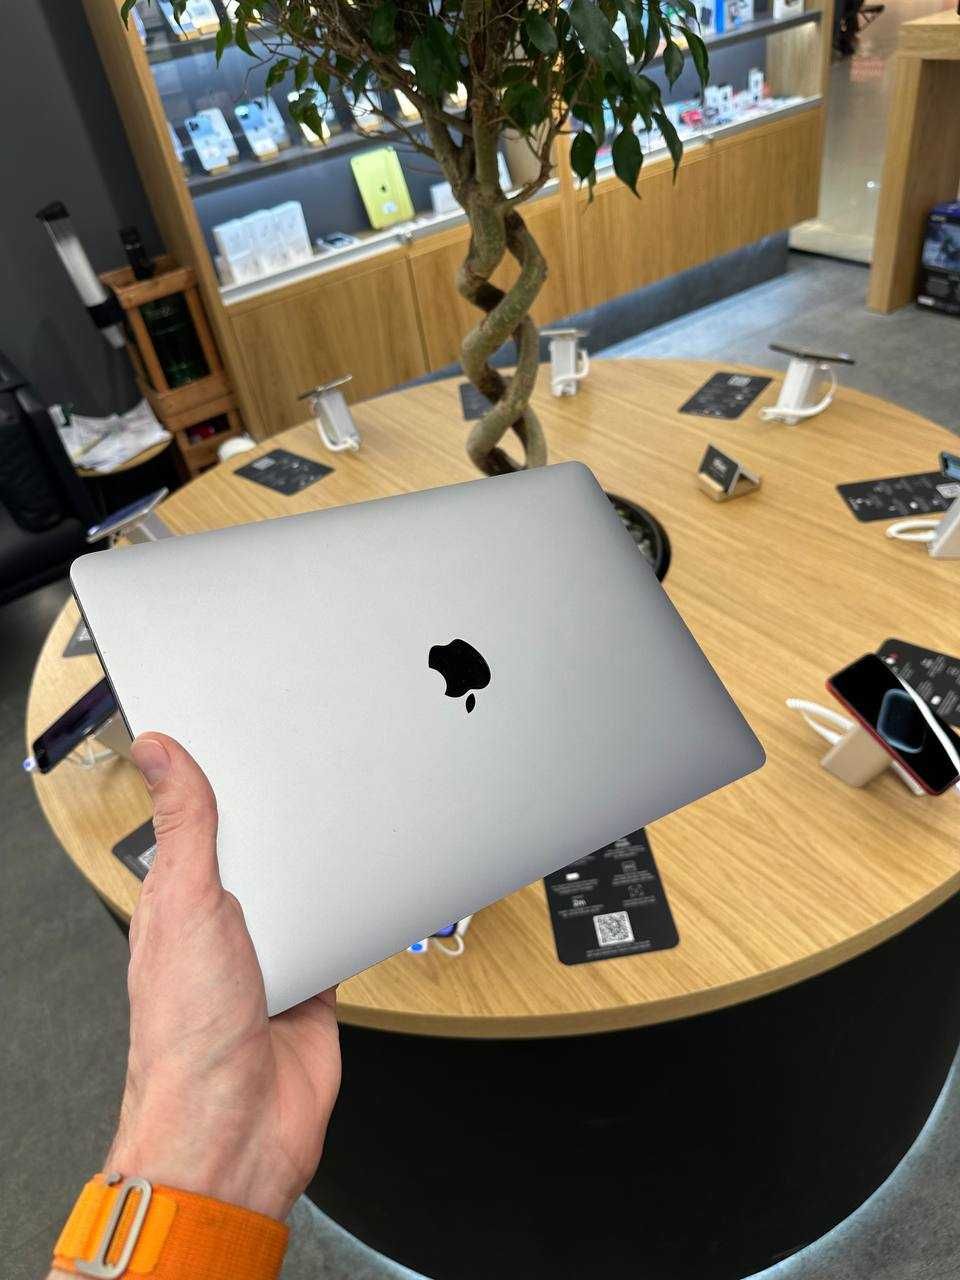 Apple MacBook Air 13" 2020